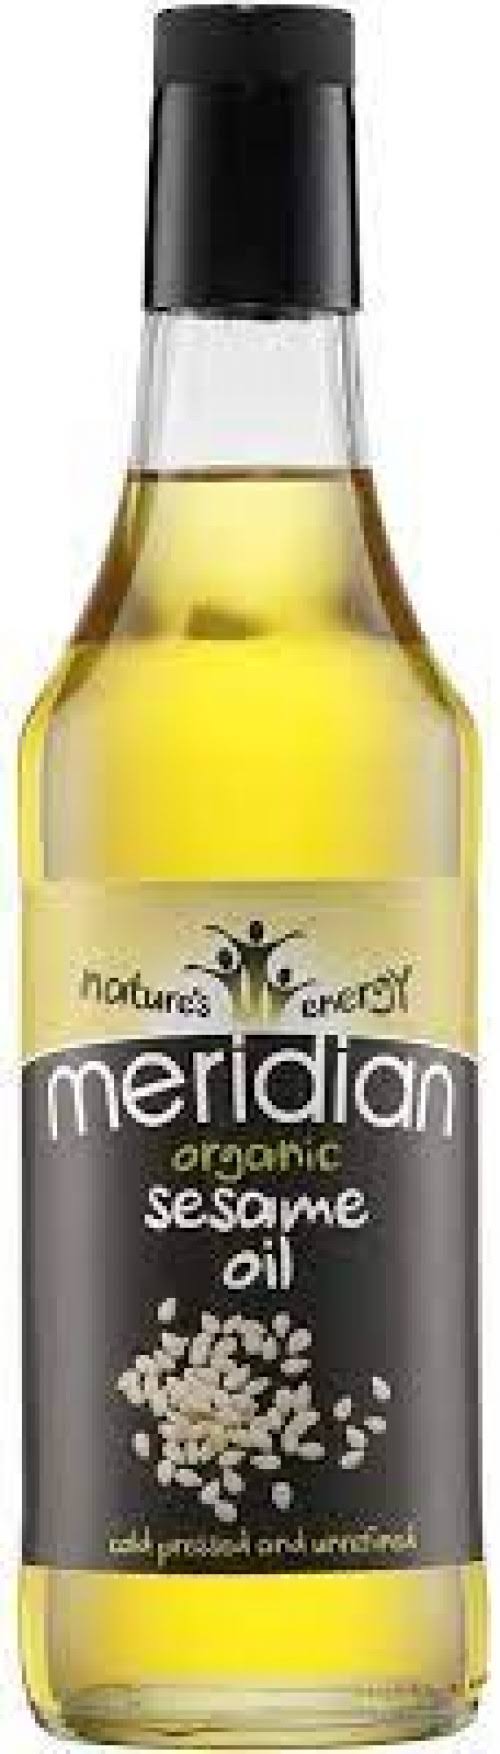 Meridian Sesame Oil